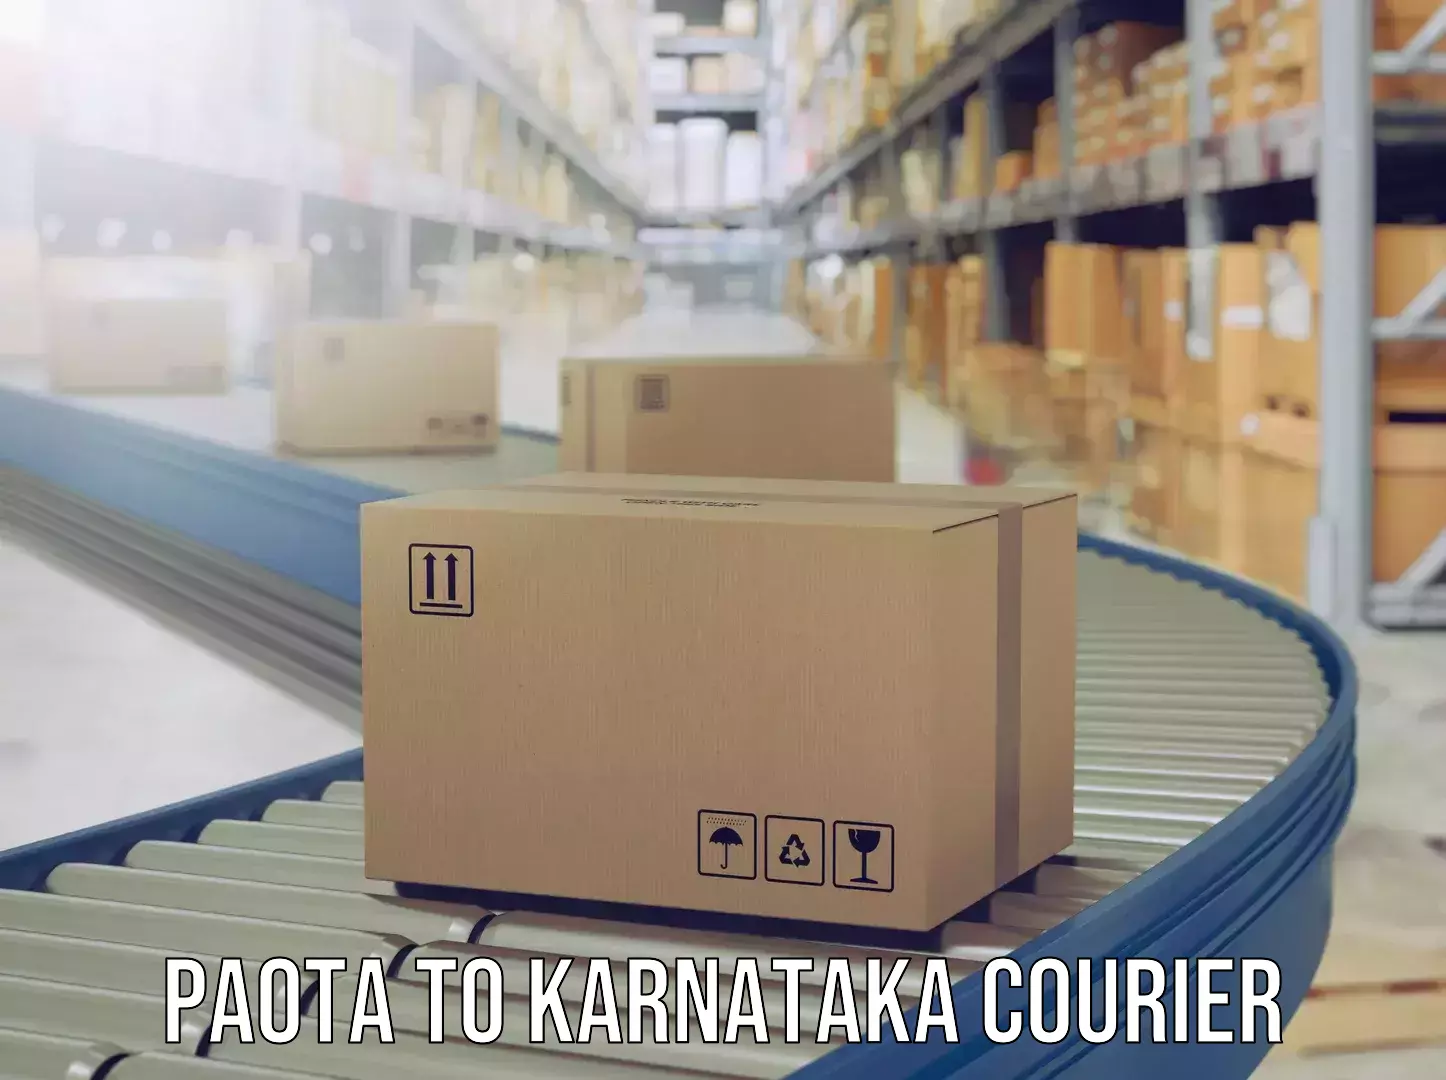 Baggage delivery solutions Paota to Karnataka